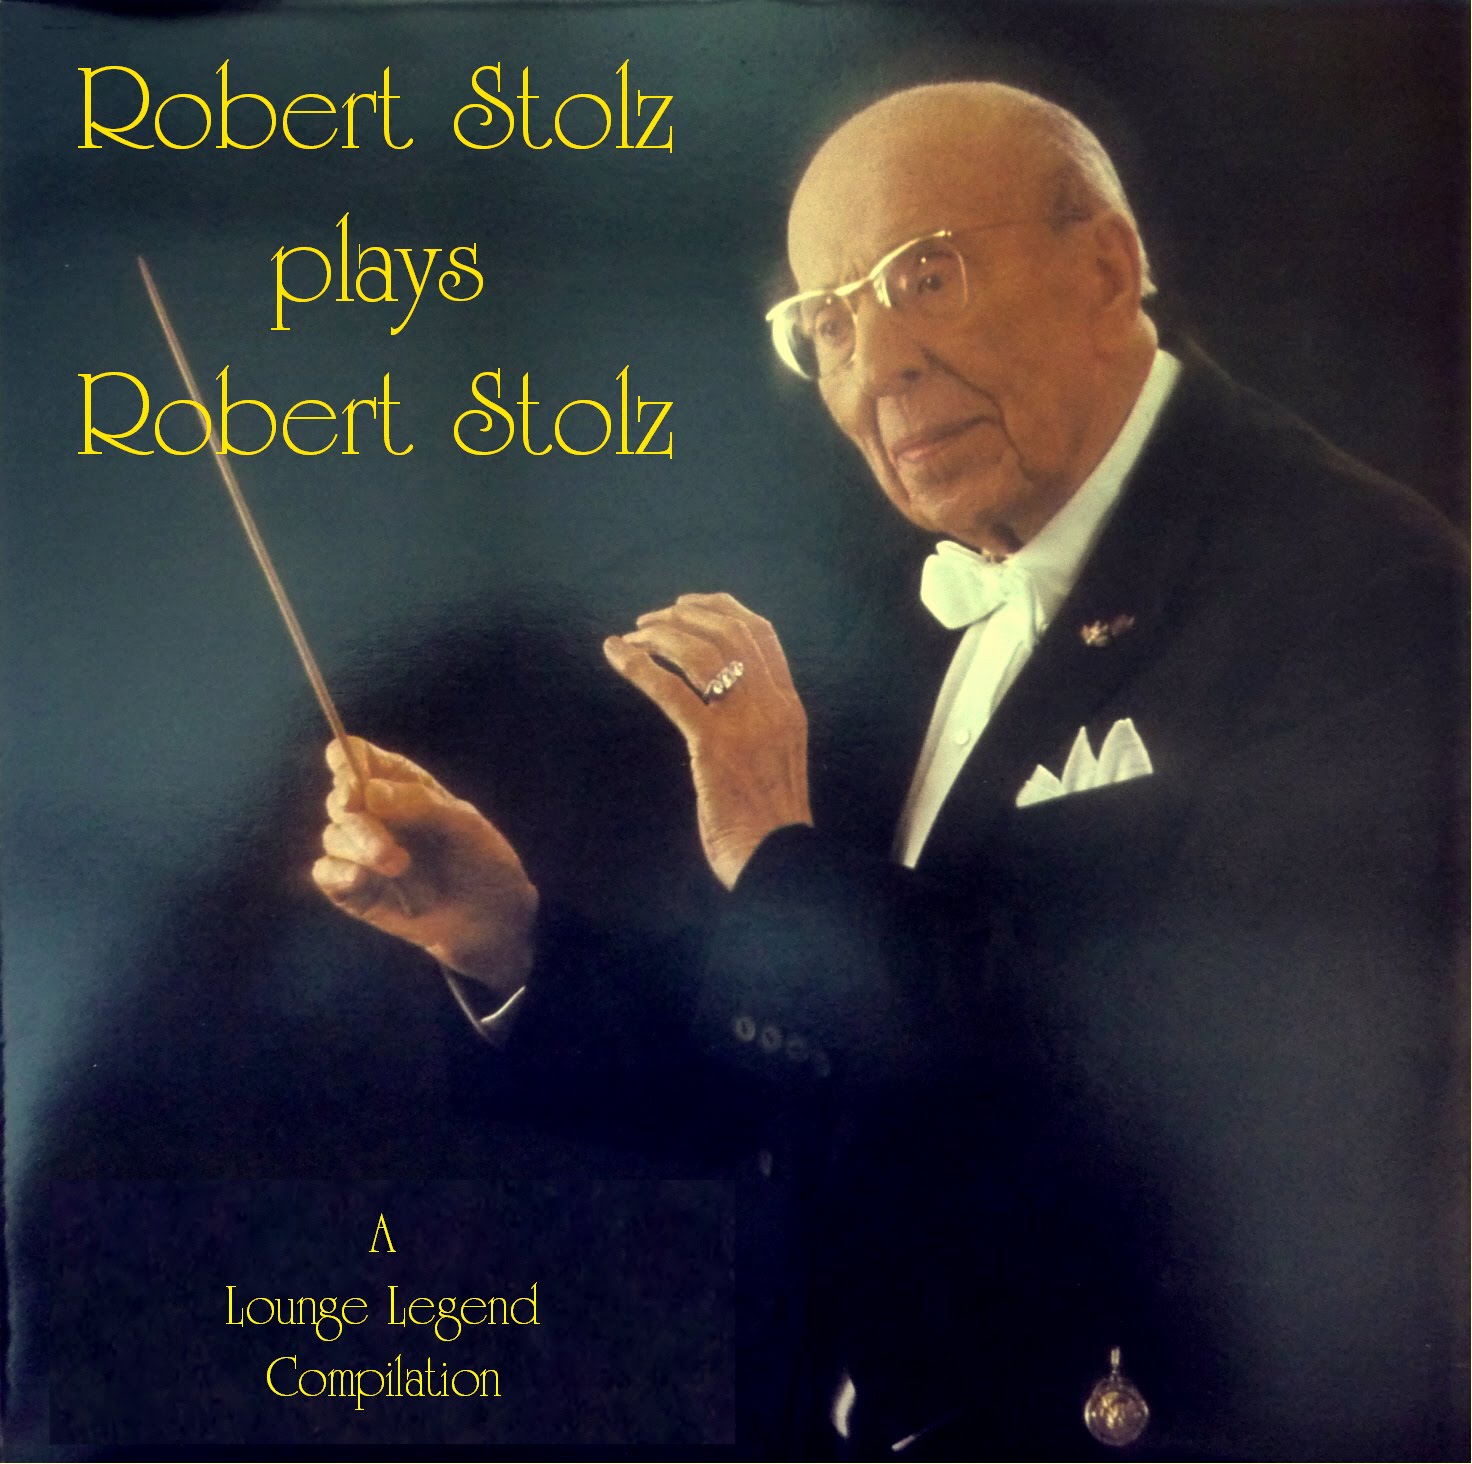 WORLD MUSIC LEGEND: A Lounge Legend Compilation - Robert Stolz plays